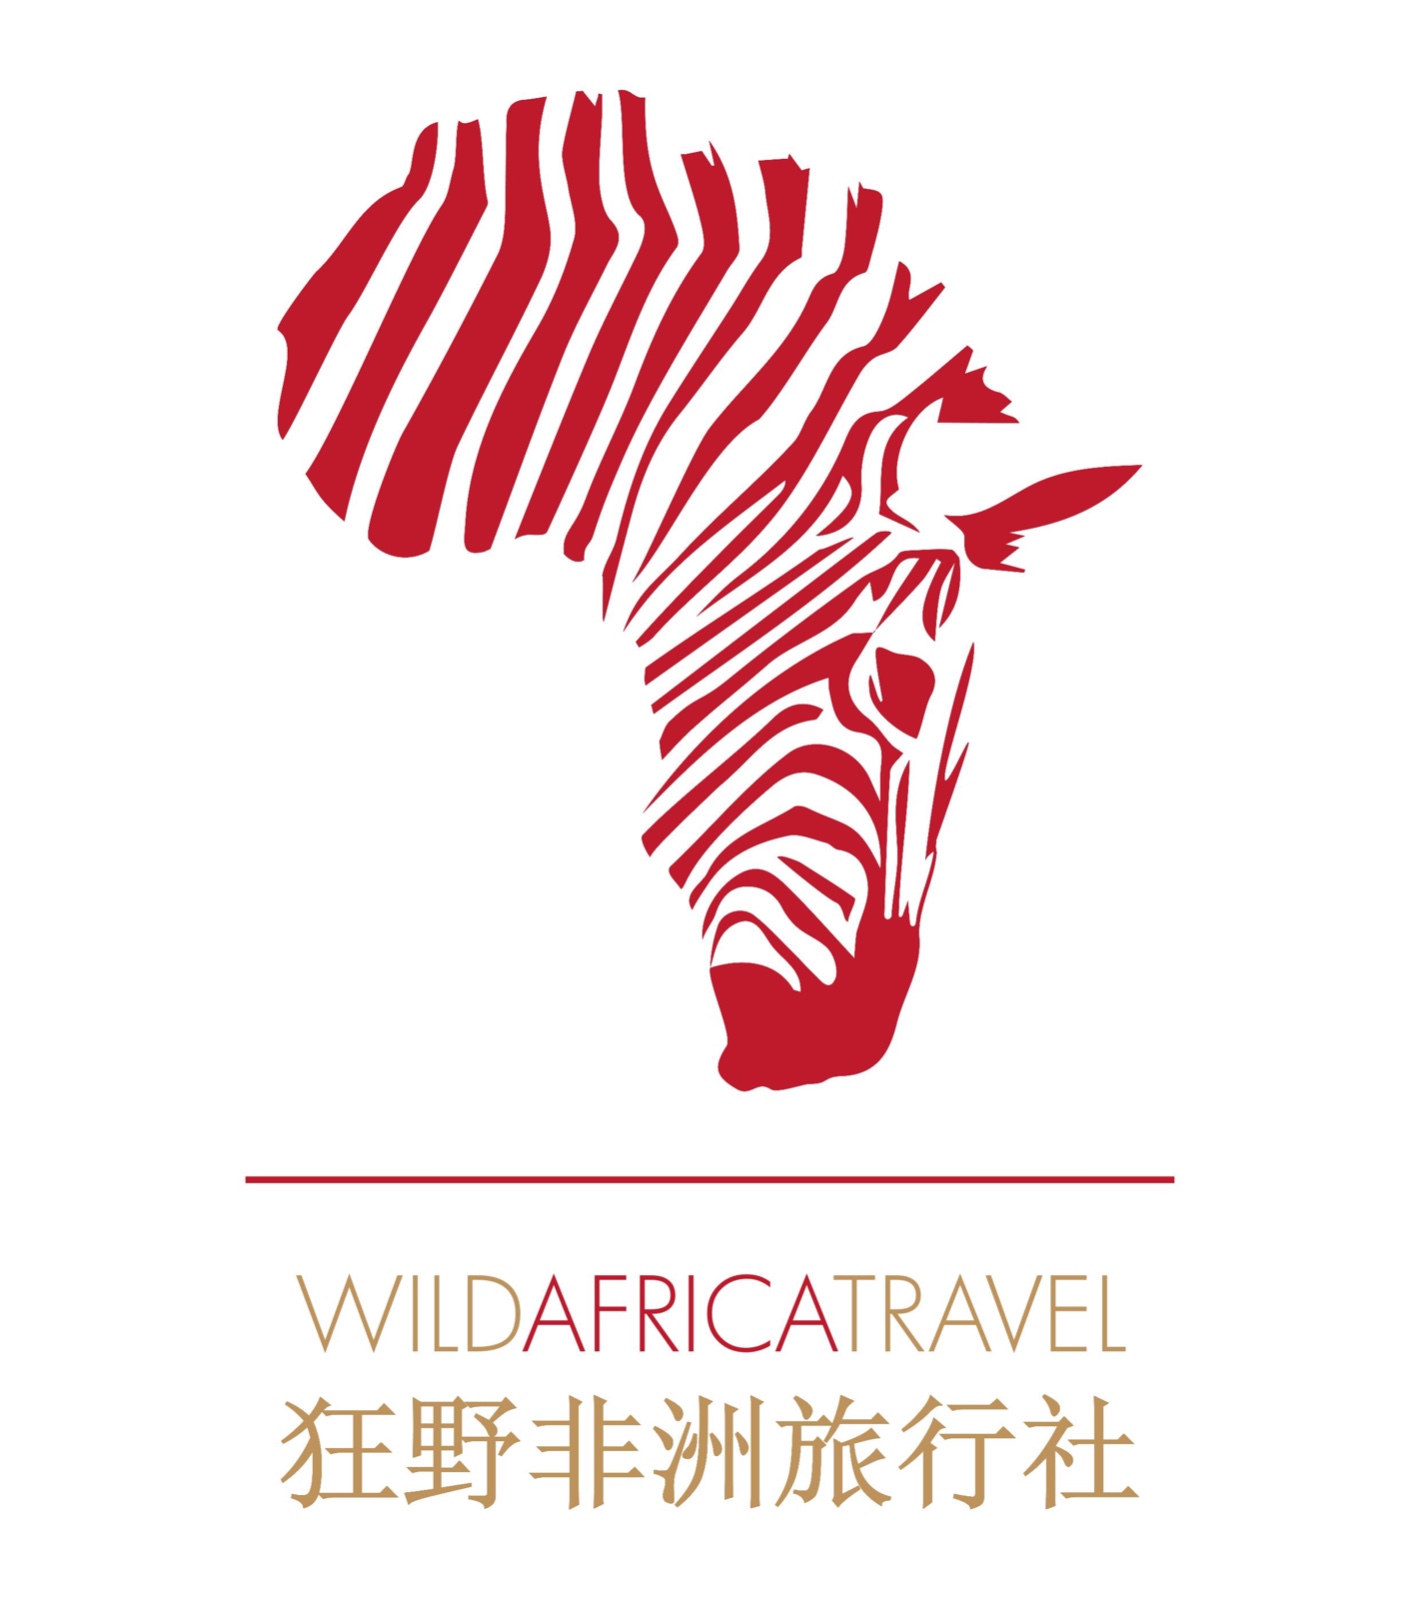 Wild Africa Travel